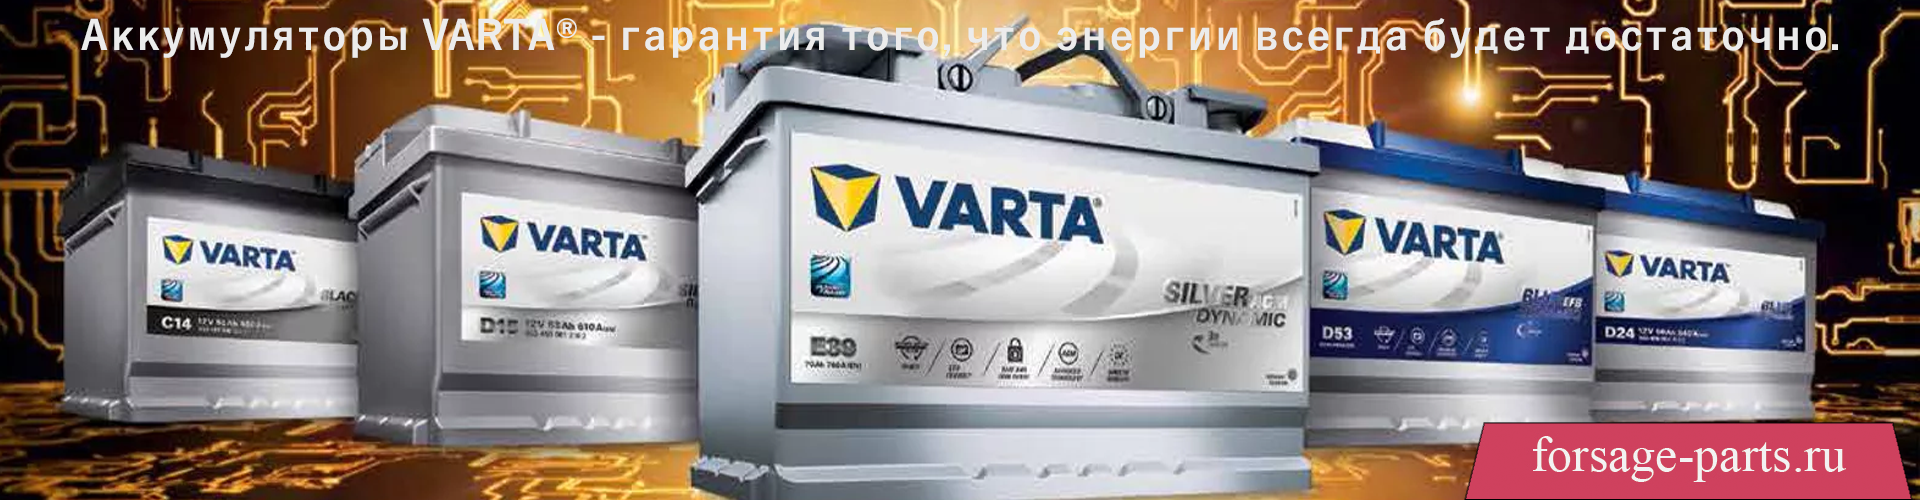 Аккумуляторы VARTA® - гарантия того, что энергии всегда будет достаточно.